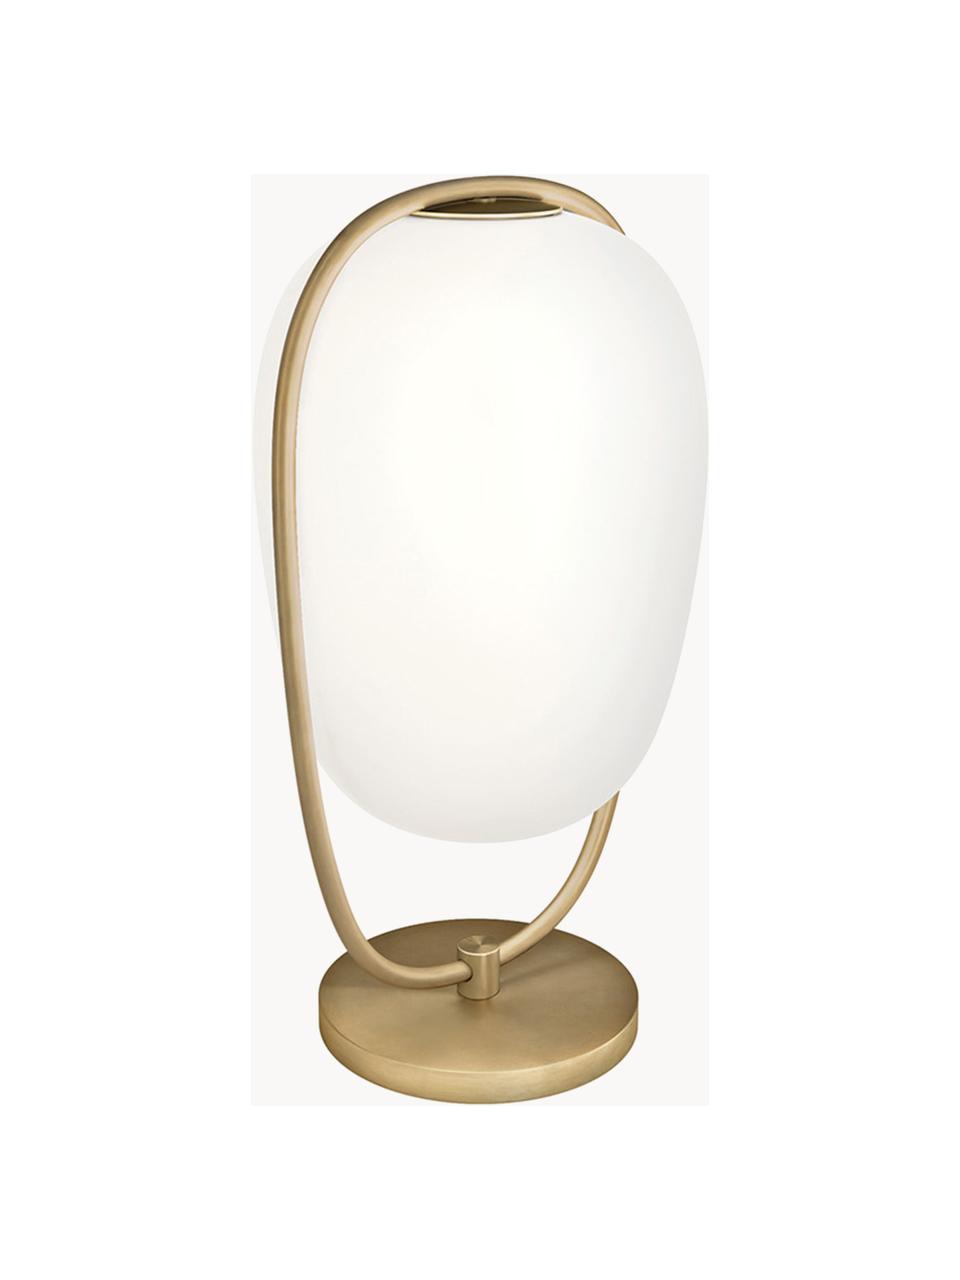 Tischlampe Lanna mit Diffusorscheibe, mundgeblasen, Lampenschirm: Glas, mundgeblasen, Goldfarben, Ø 22 x H 40 cm